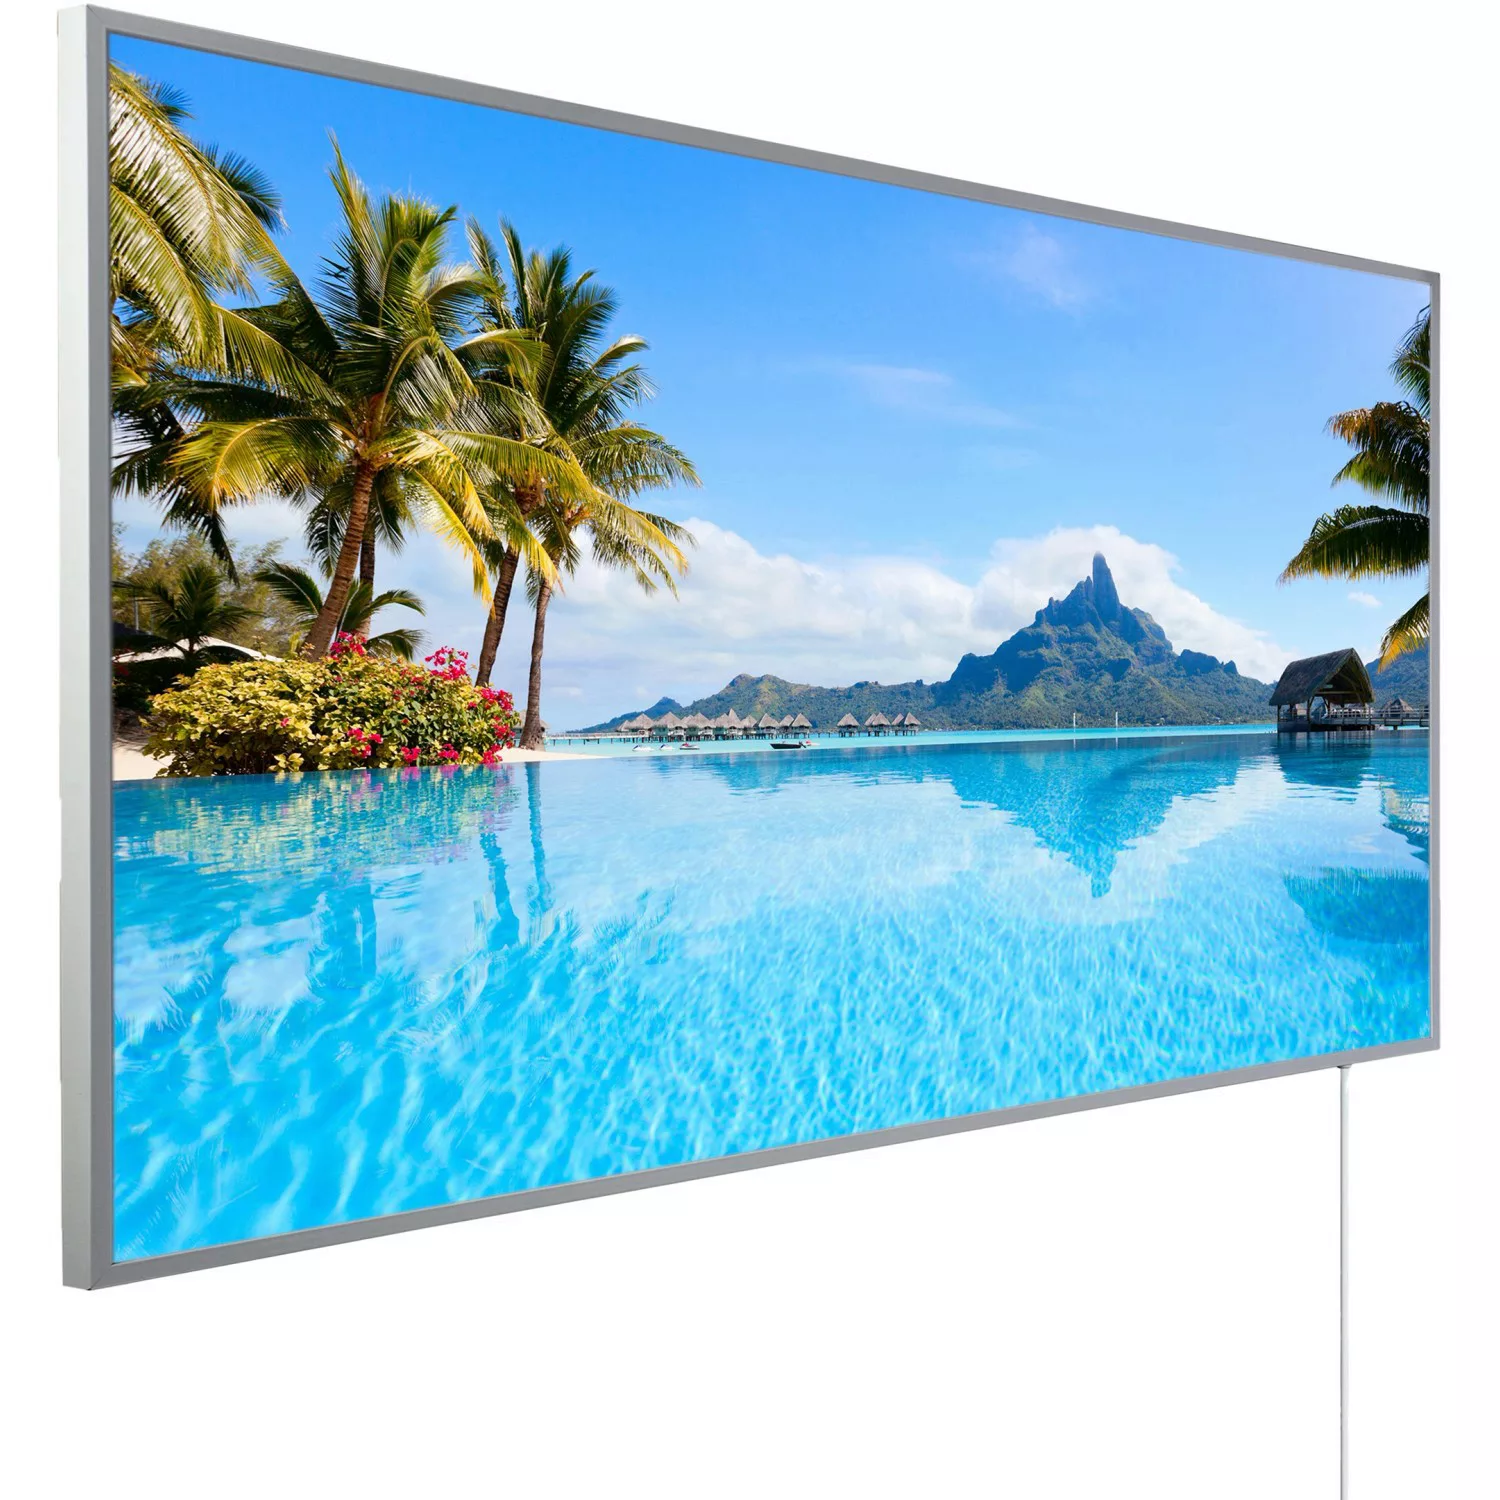 Könighaus Infrarotheizung Panorama-Serie 60 cm x 120 cm 1000 W Bora Bora In günstig online kaufen